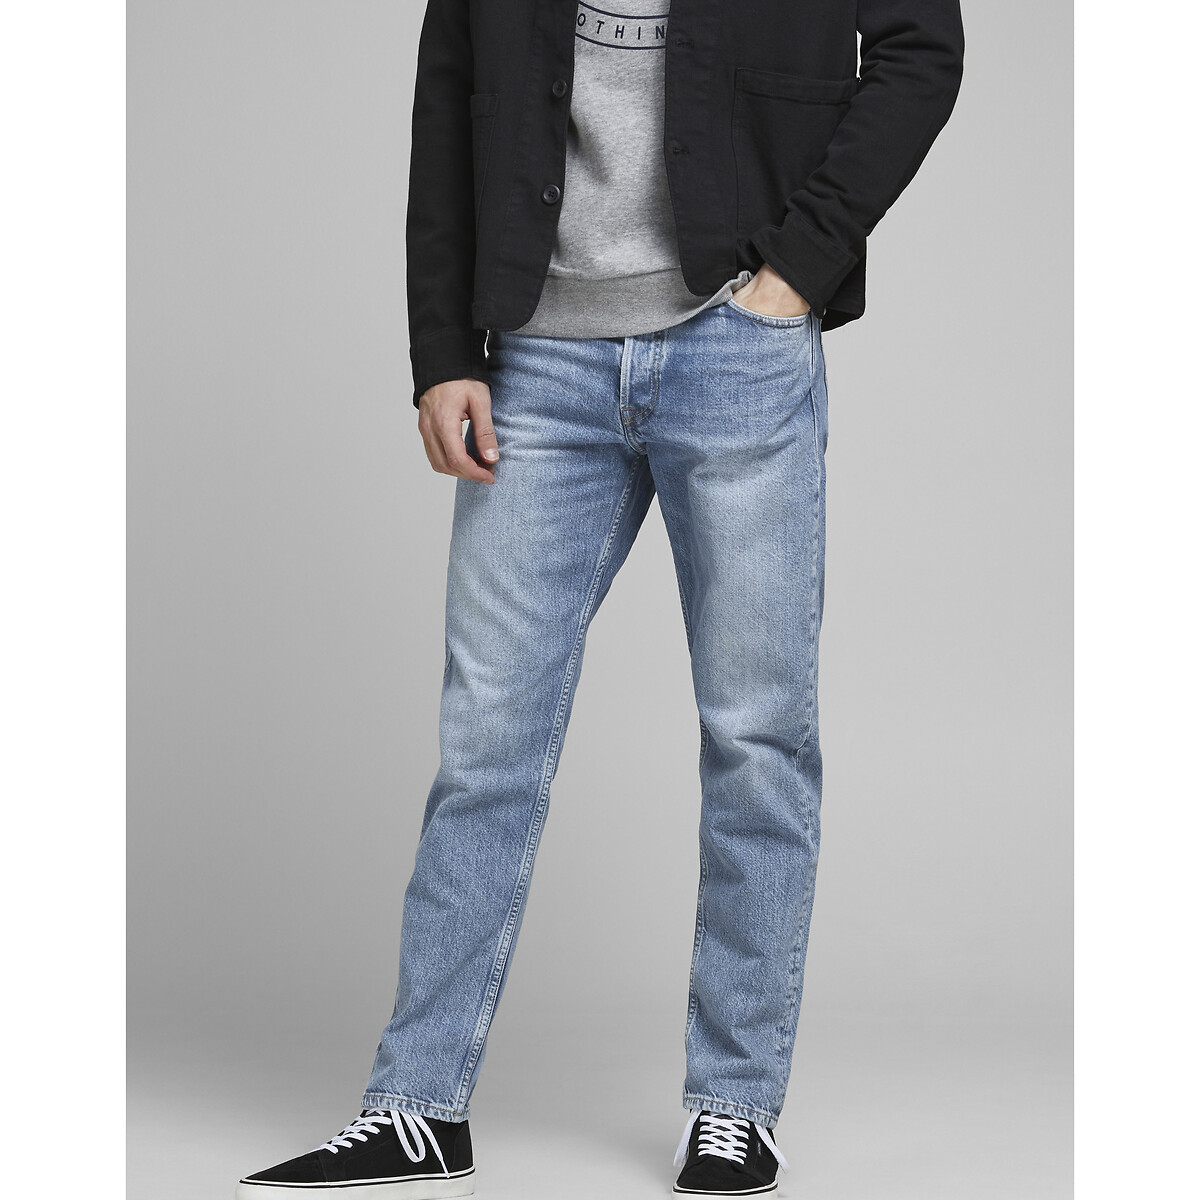 Jeans Chris, weites Bein von jack & jones